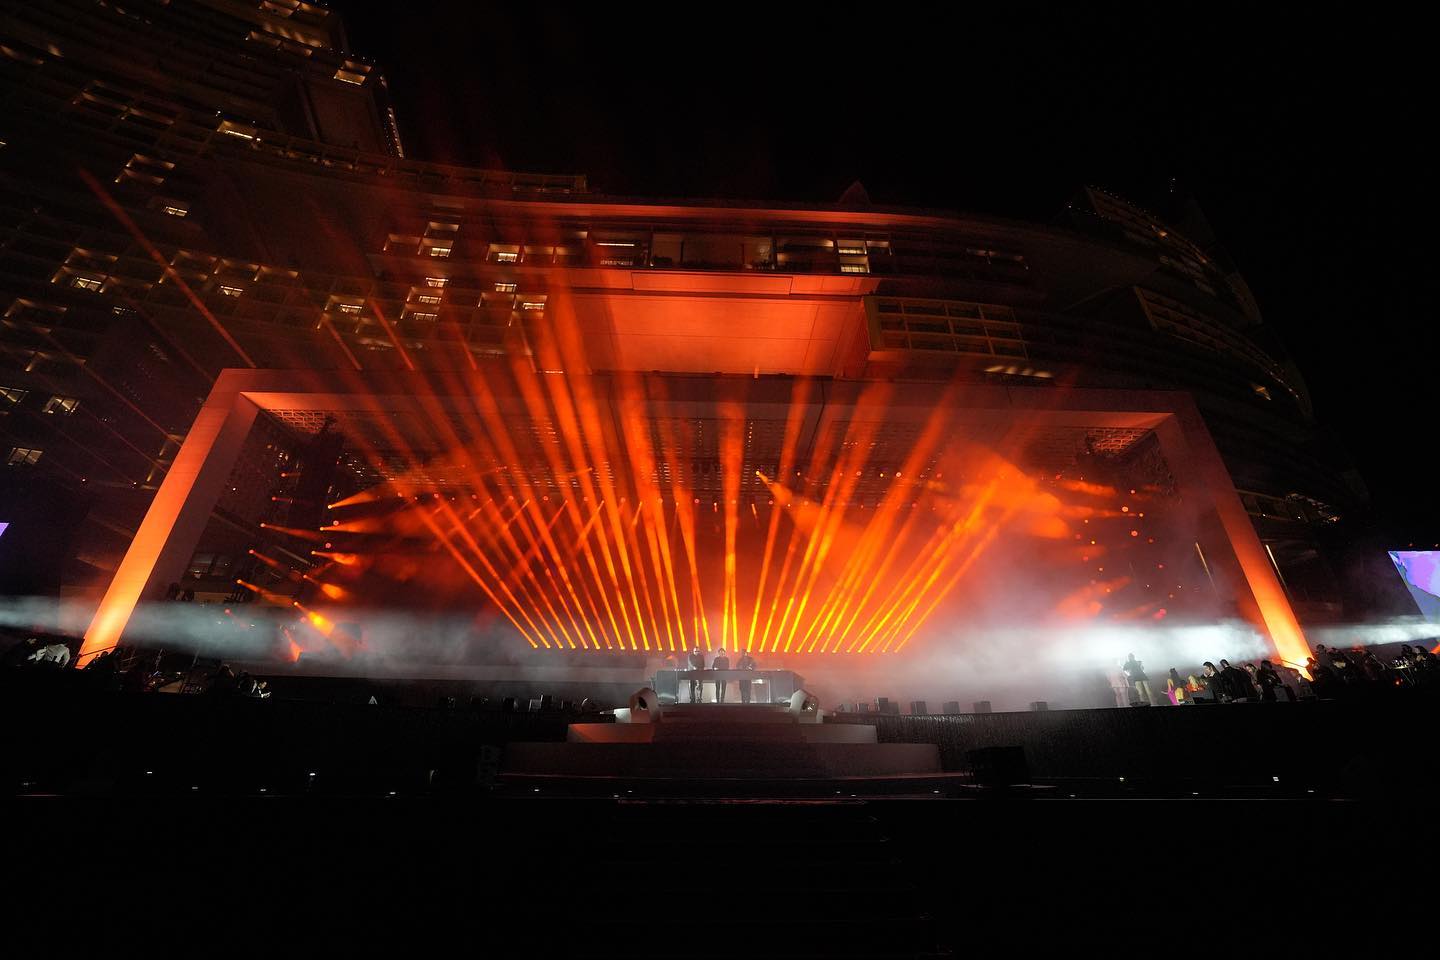 PRG leverde een kant-en-klare technische levering voor het driedaagse extravaganza, inclusief een gigantische installatie van verlichting over de hele gevel van het pand en grootschalige audio, video en rigging voor het Atlantis 'Grand Reveal'-evenement.